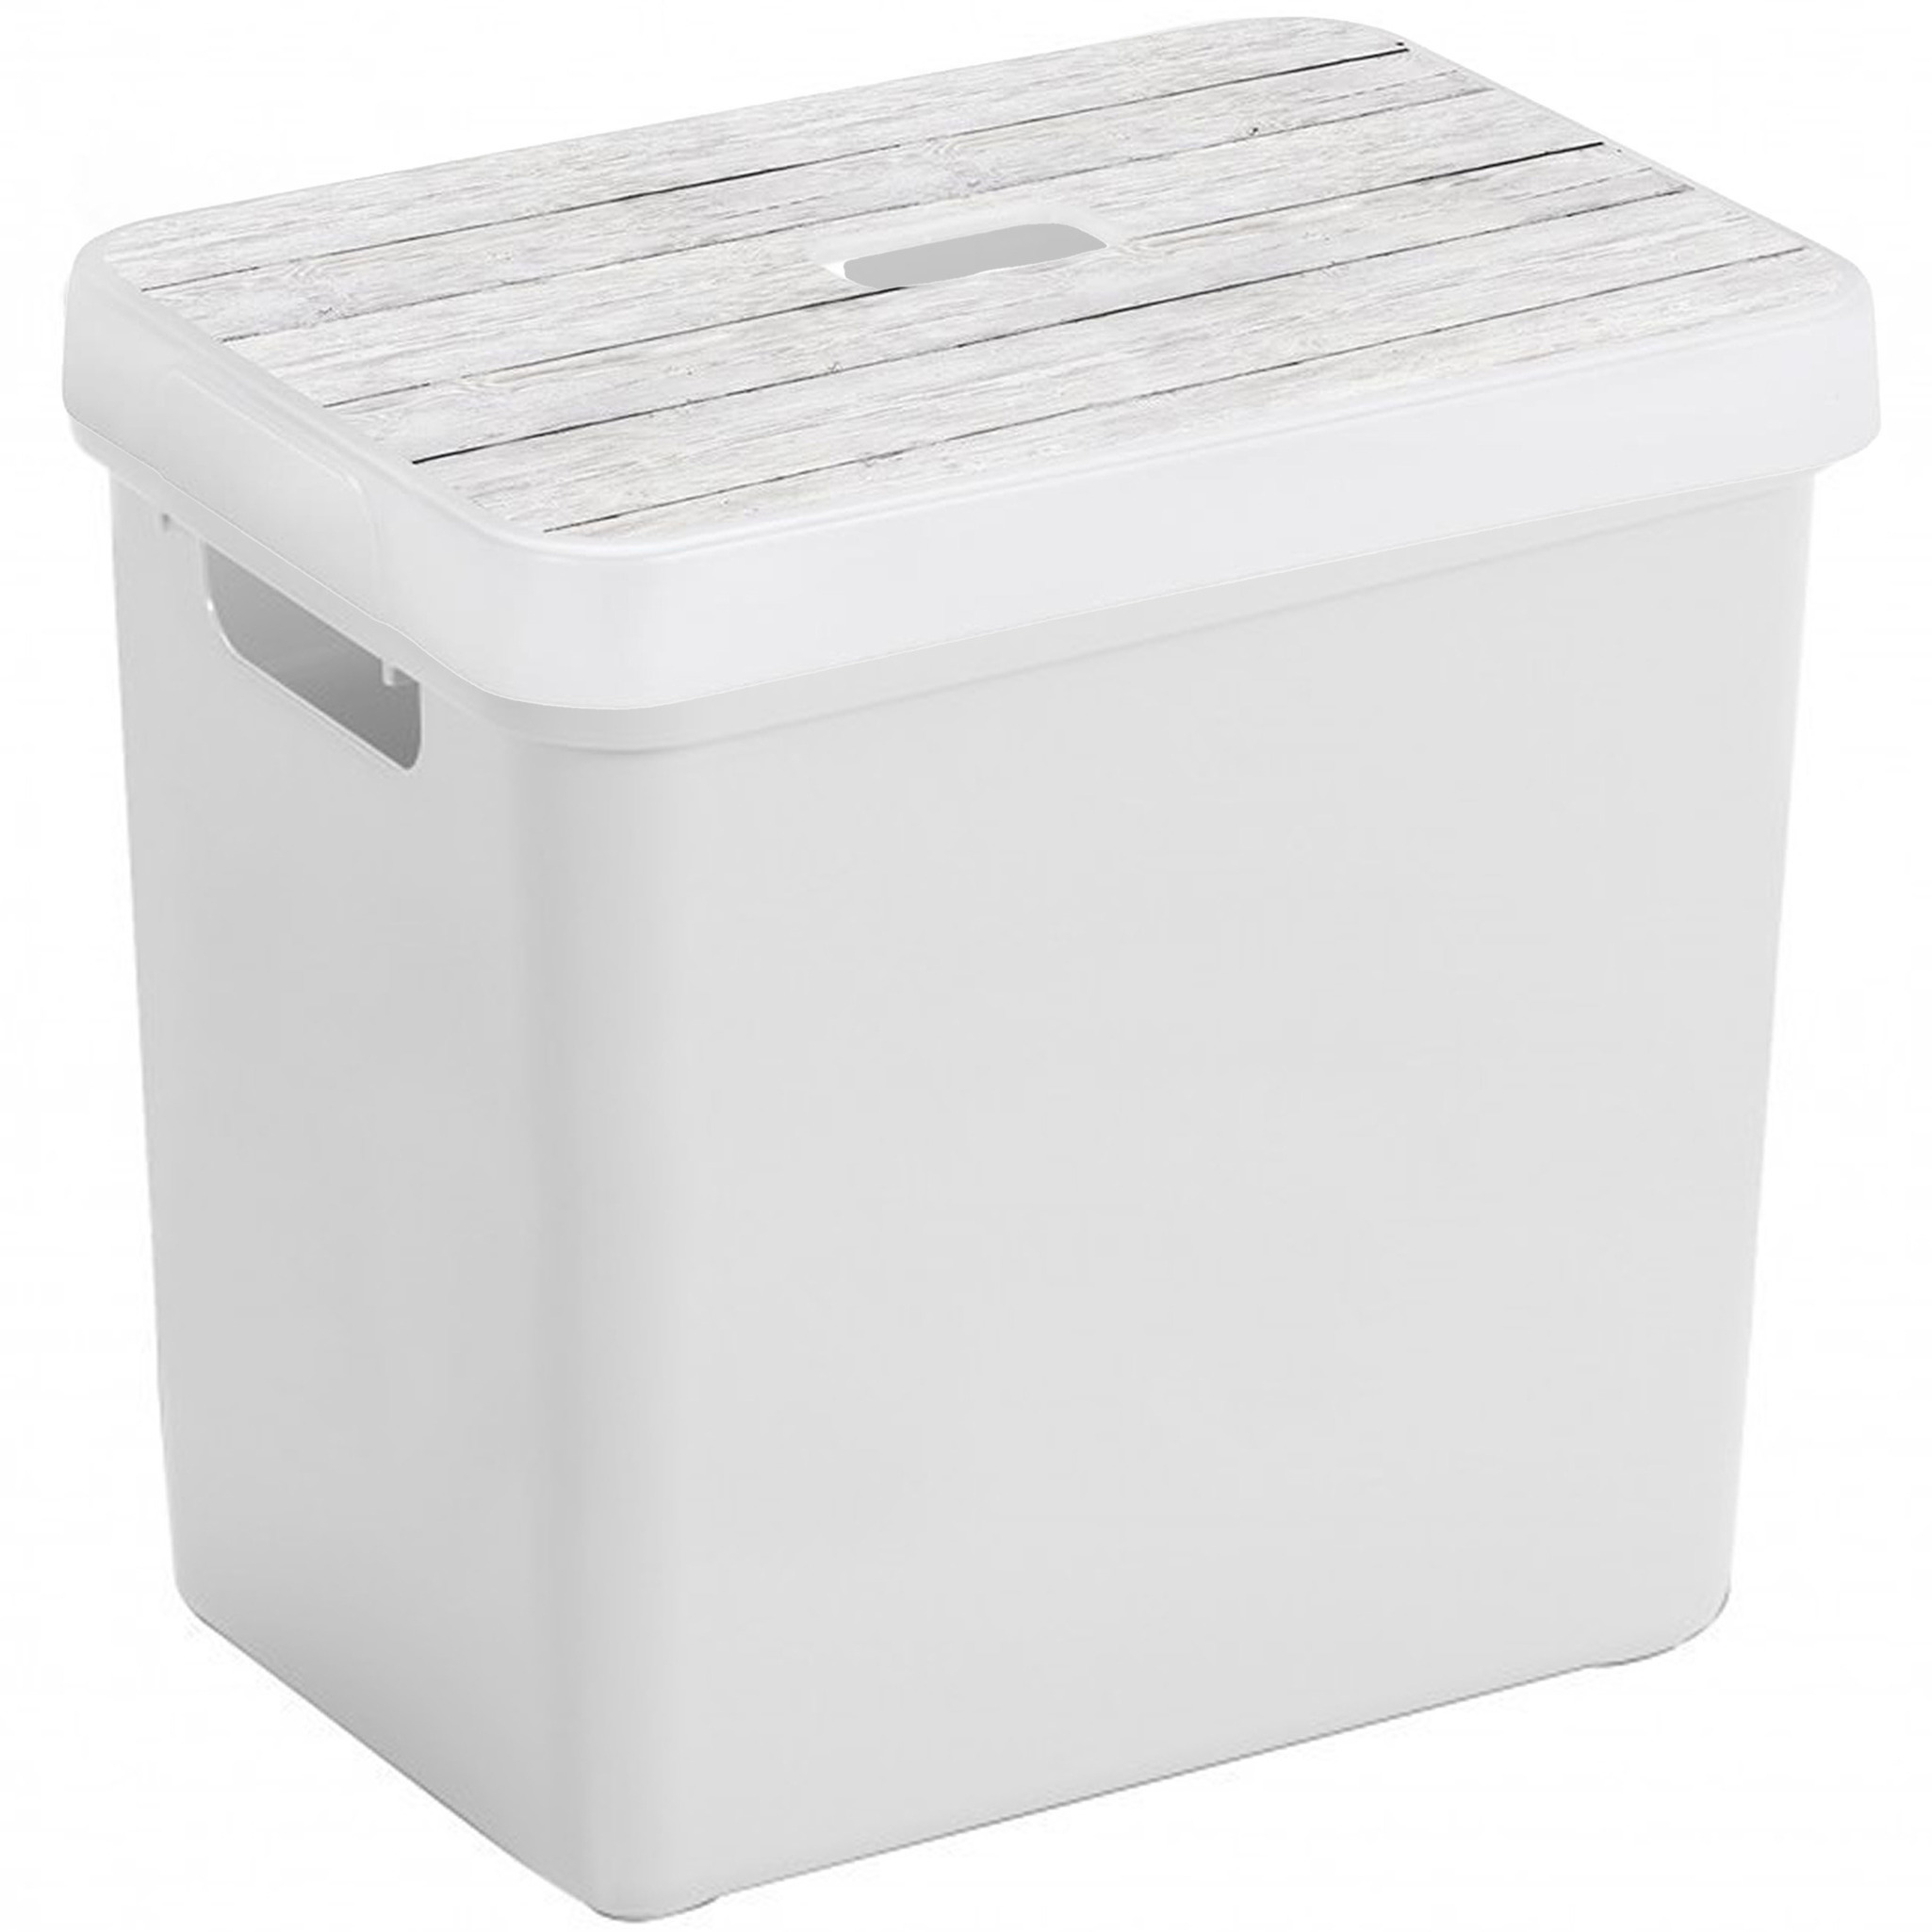 Sunware Opbergbox-mand wit 25 liter met deksel hout kleur